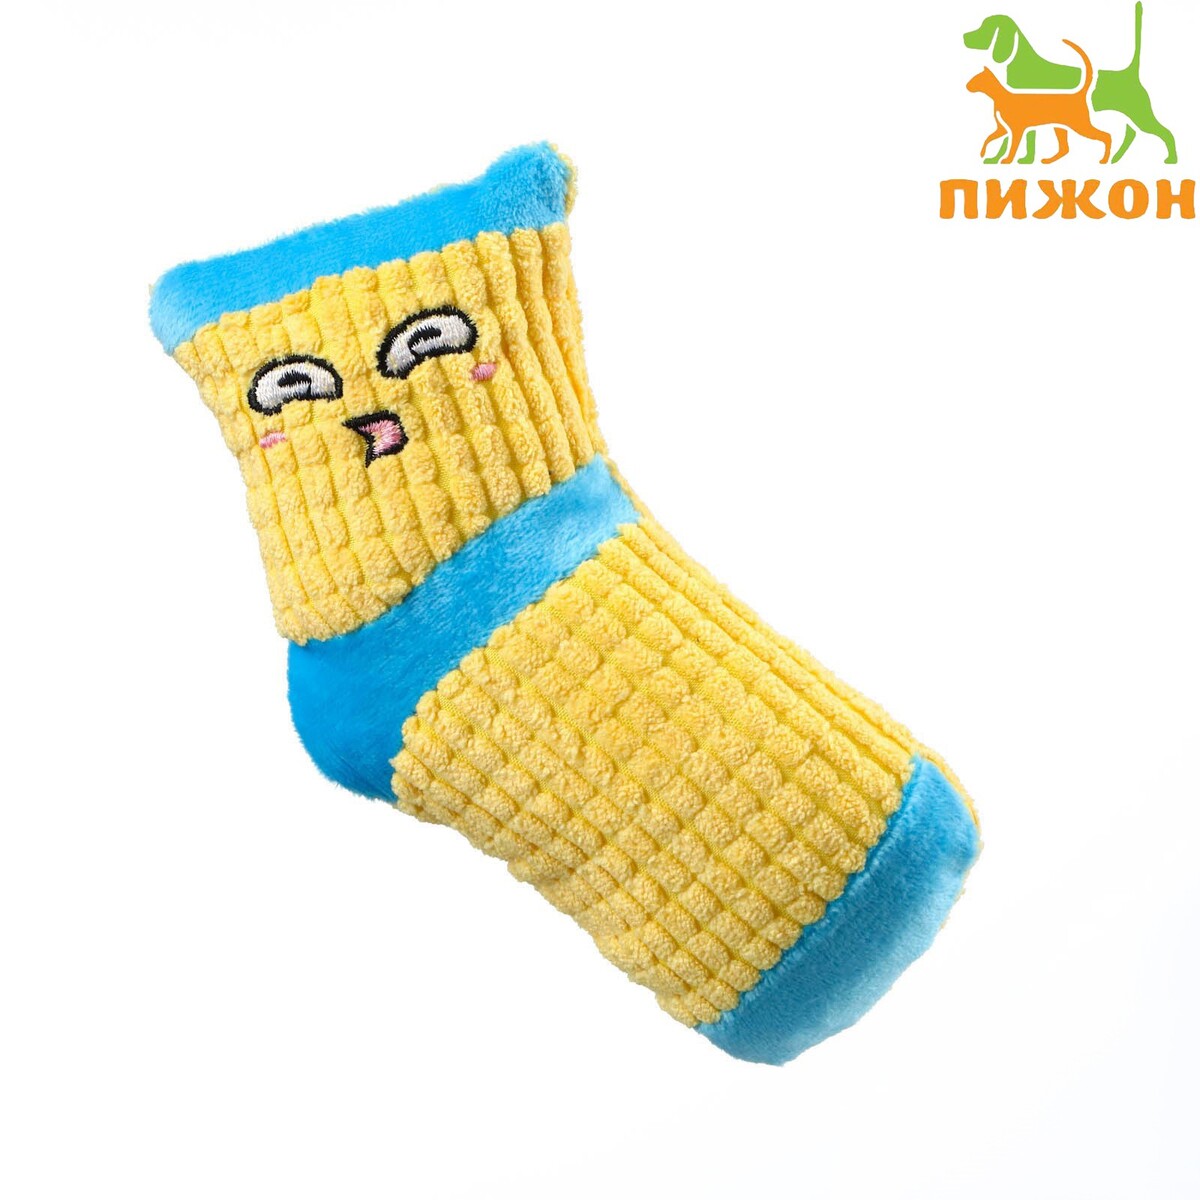 Игрушка мягкая с пищалкой носок желтый, 16 см игрушка мягкая с пищалкой носок желтый 16 см